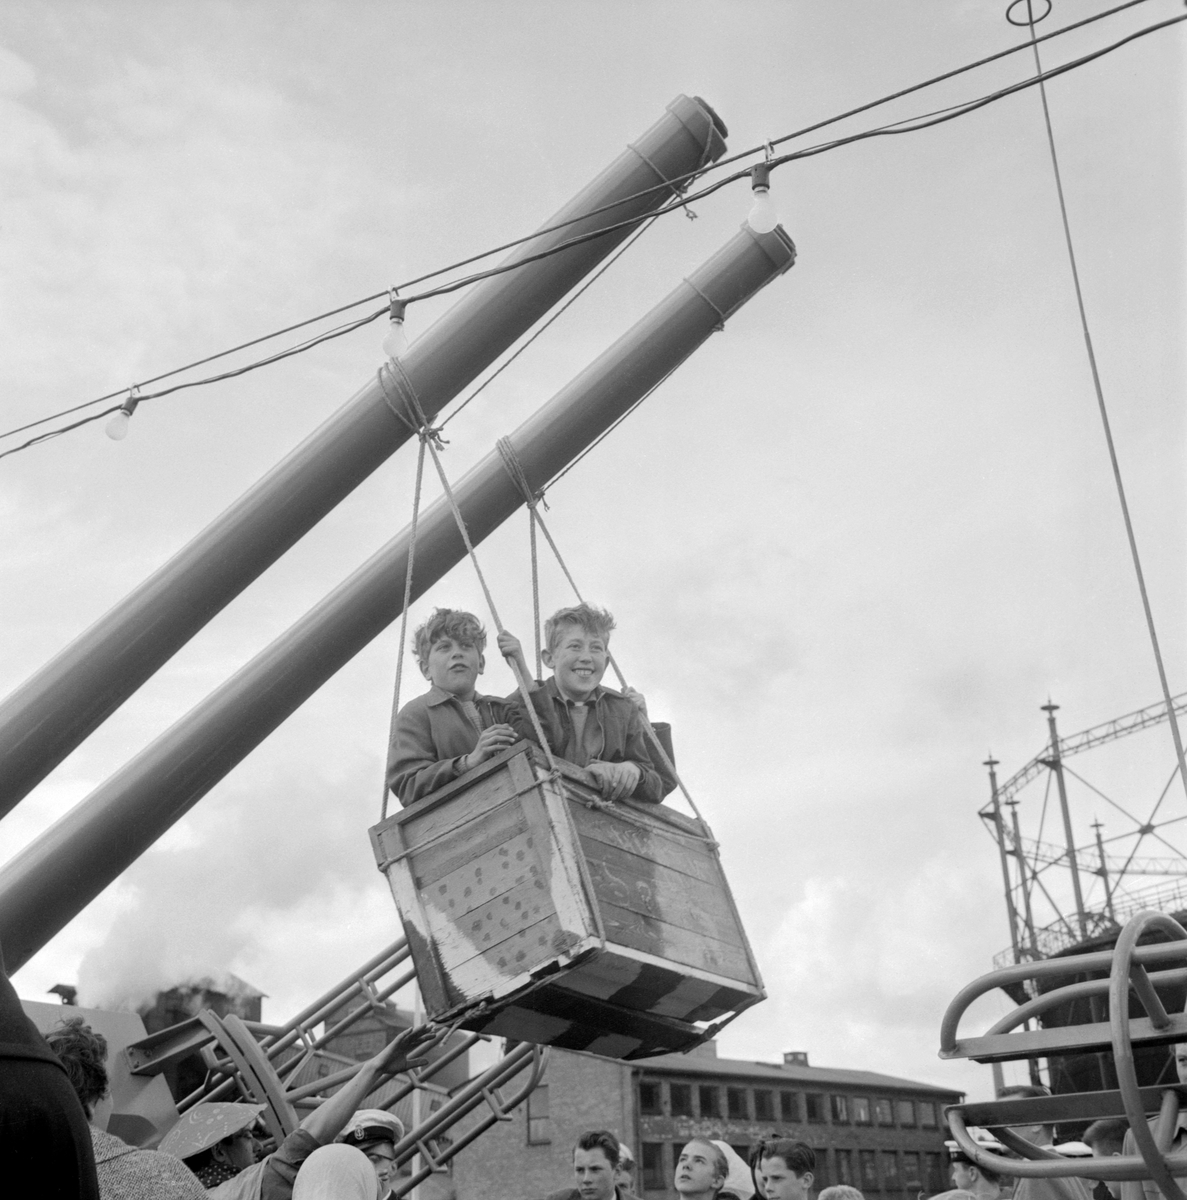 Kanonrören på jagaren HMS Östergötland tjänsgör för en dag som gungstativ. Det hände under söndagen den 18 maj 1958, då det arrangerades besöksdag vid fartygets besök i Norrköpings inre hamn. Fartyget hade kort före levererats till Marinen och var på färd från Götaverken i Göteborg till sin bestämmelseort.